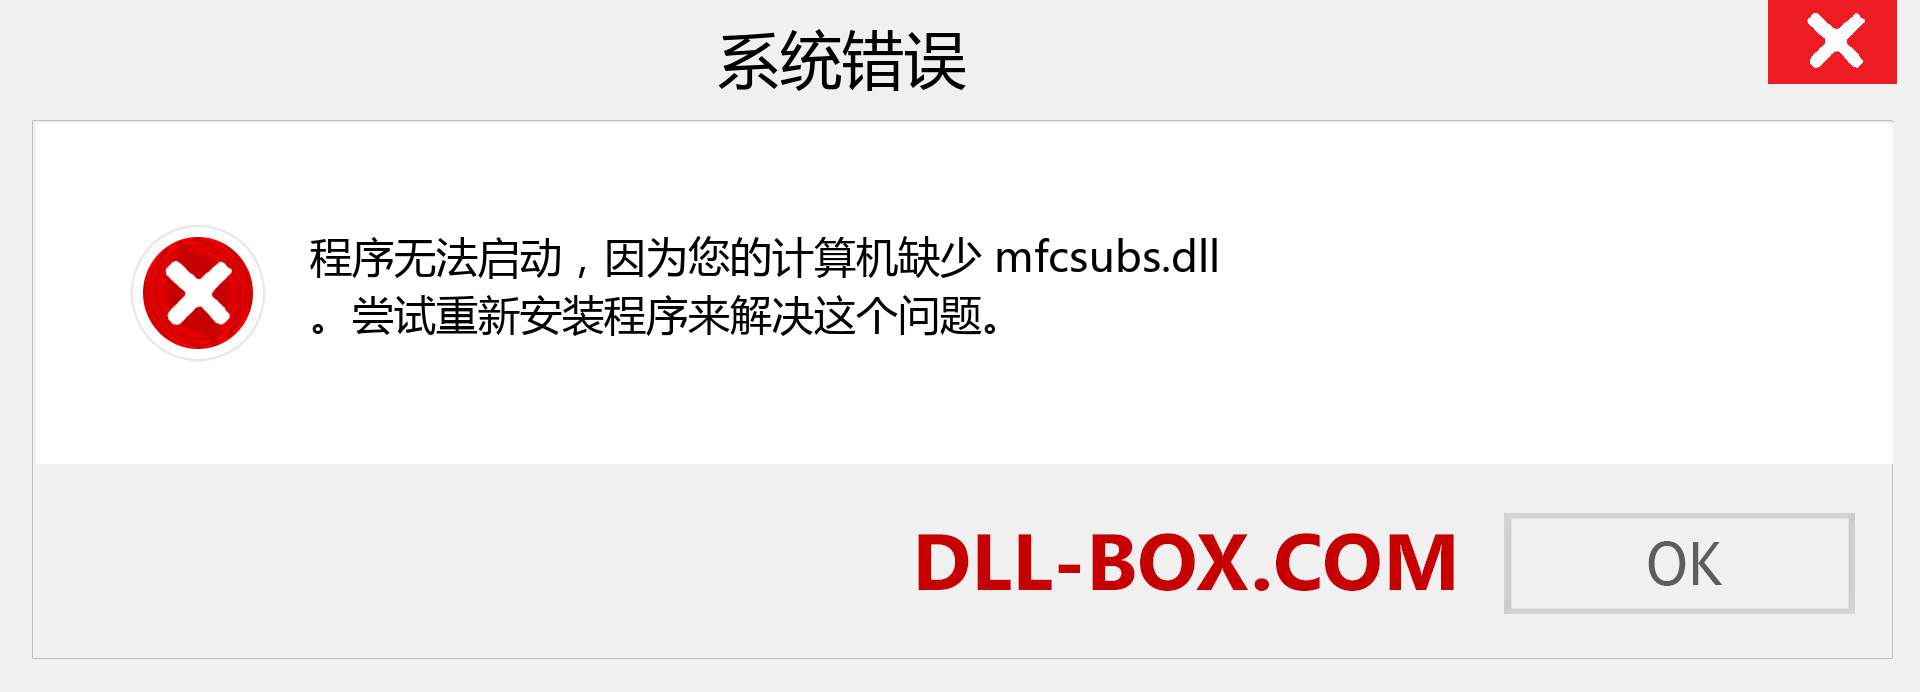 mfcsubs.dll 文件丢失？。 适用于 Windows 7、8、10 的下载 - 修复 Windows、照片、图像上的 mfcsubs dll 丢失错误